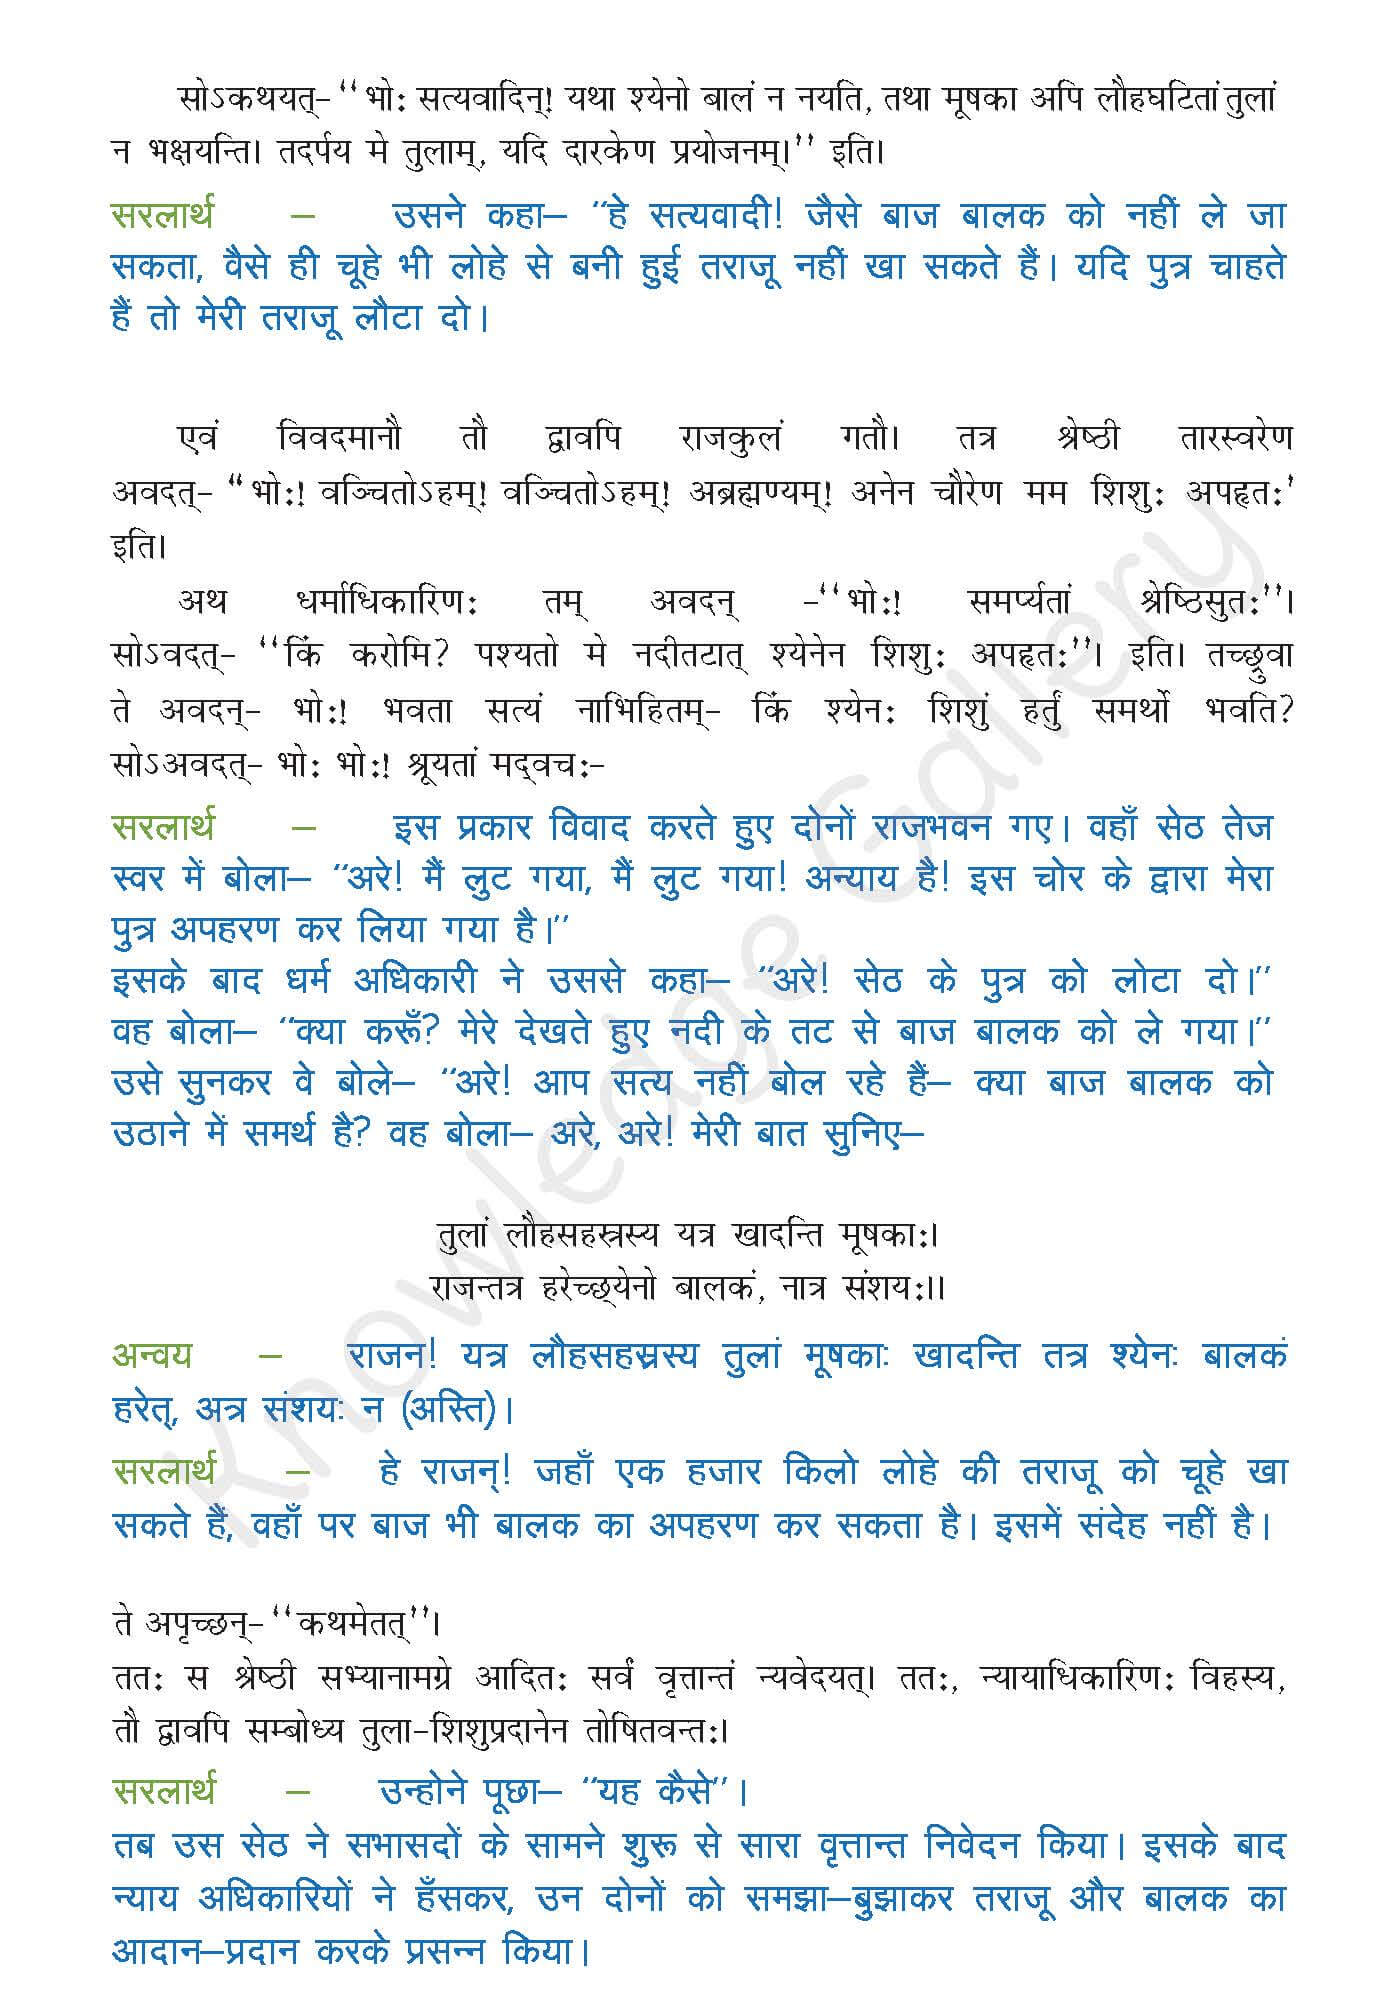 NCERT Solution For Class 9 Sanskrit Chapter 6 part 3